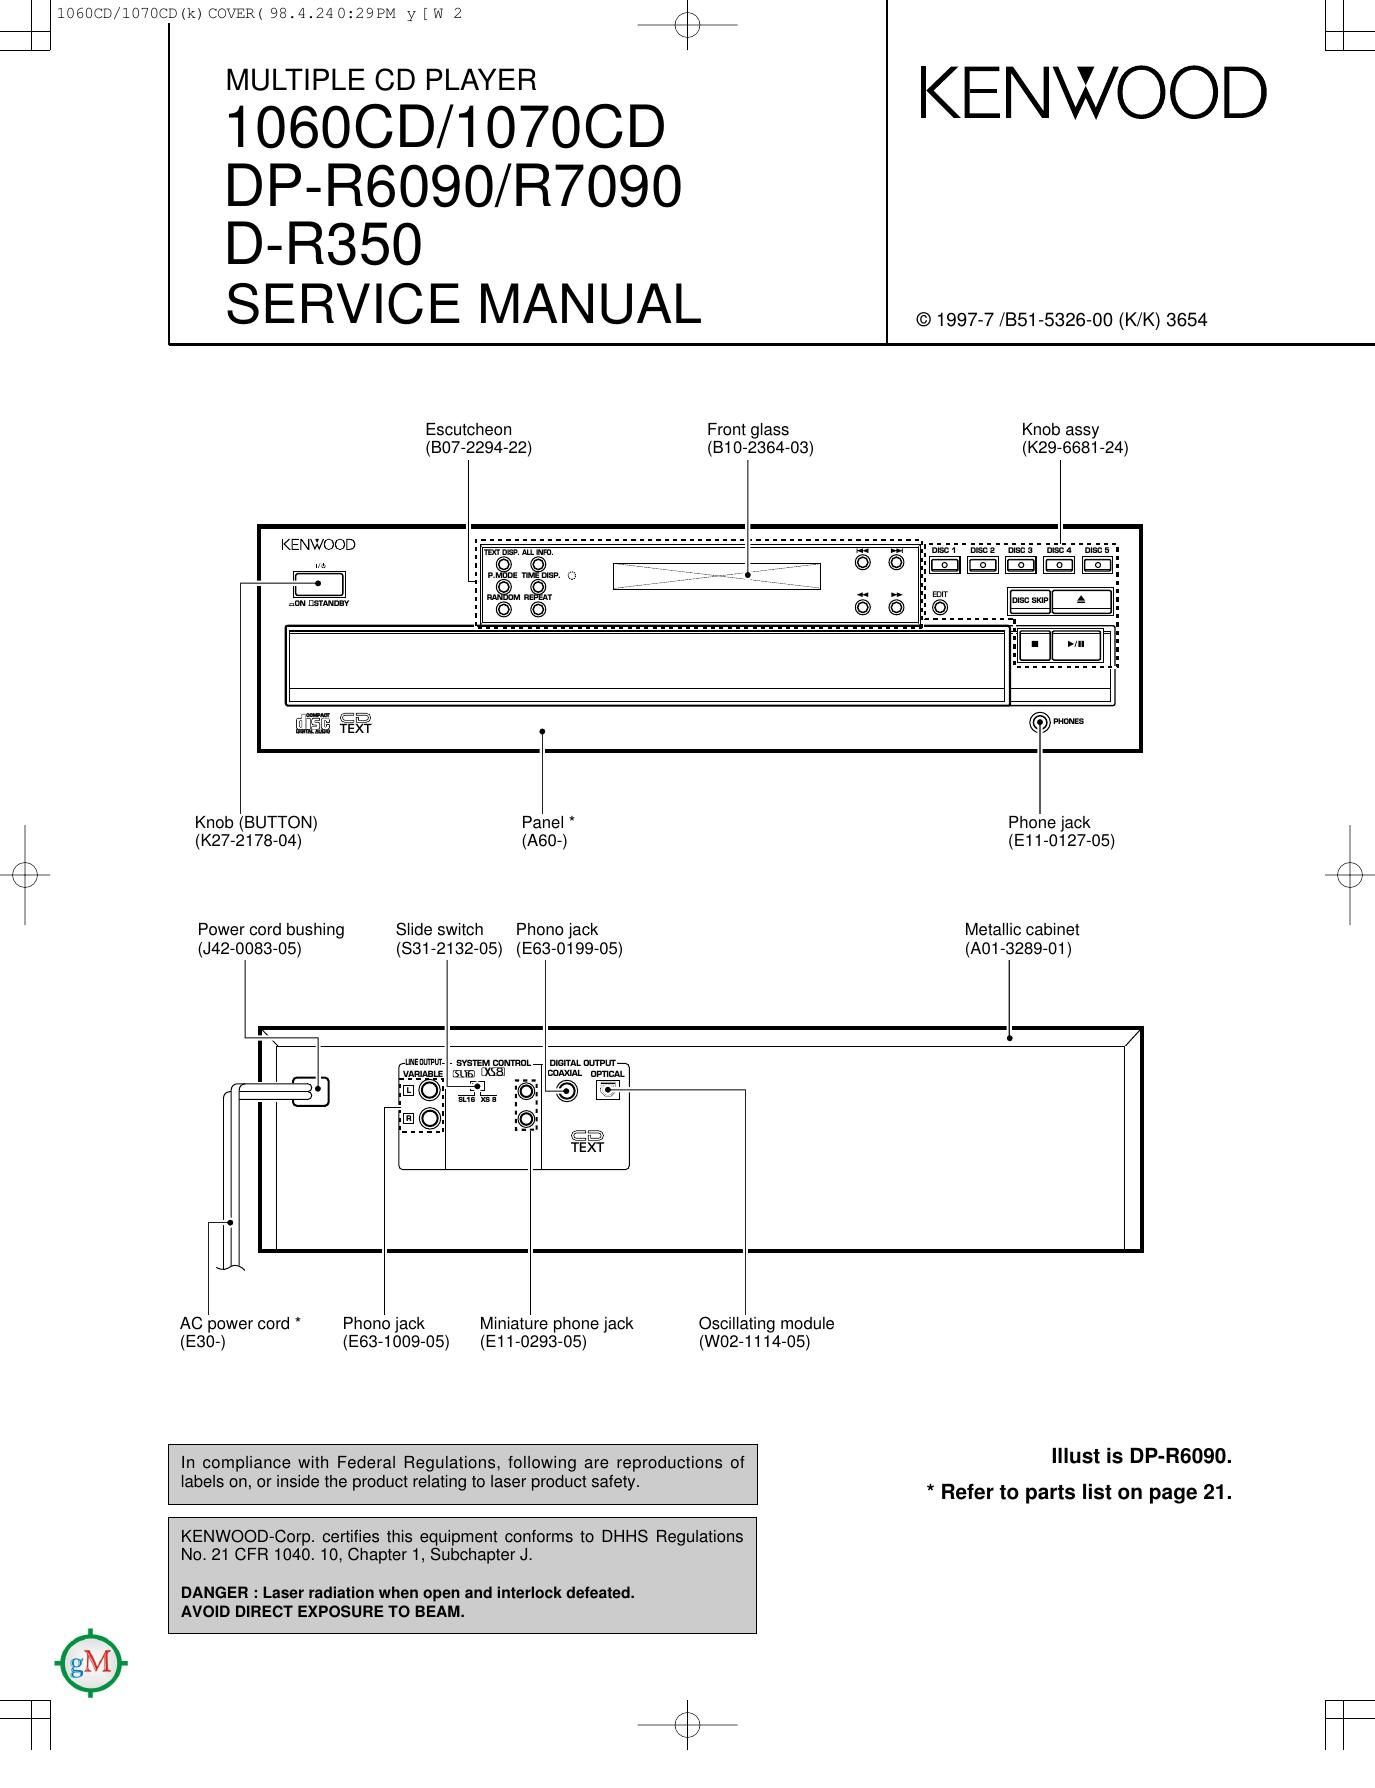 Kenwood DPR 7090 Service Manual